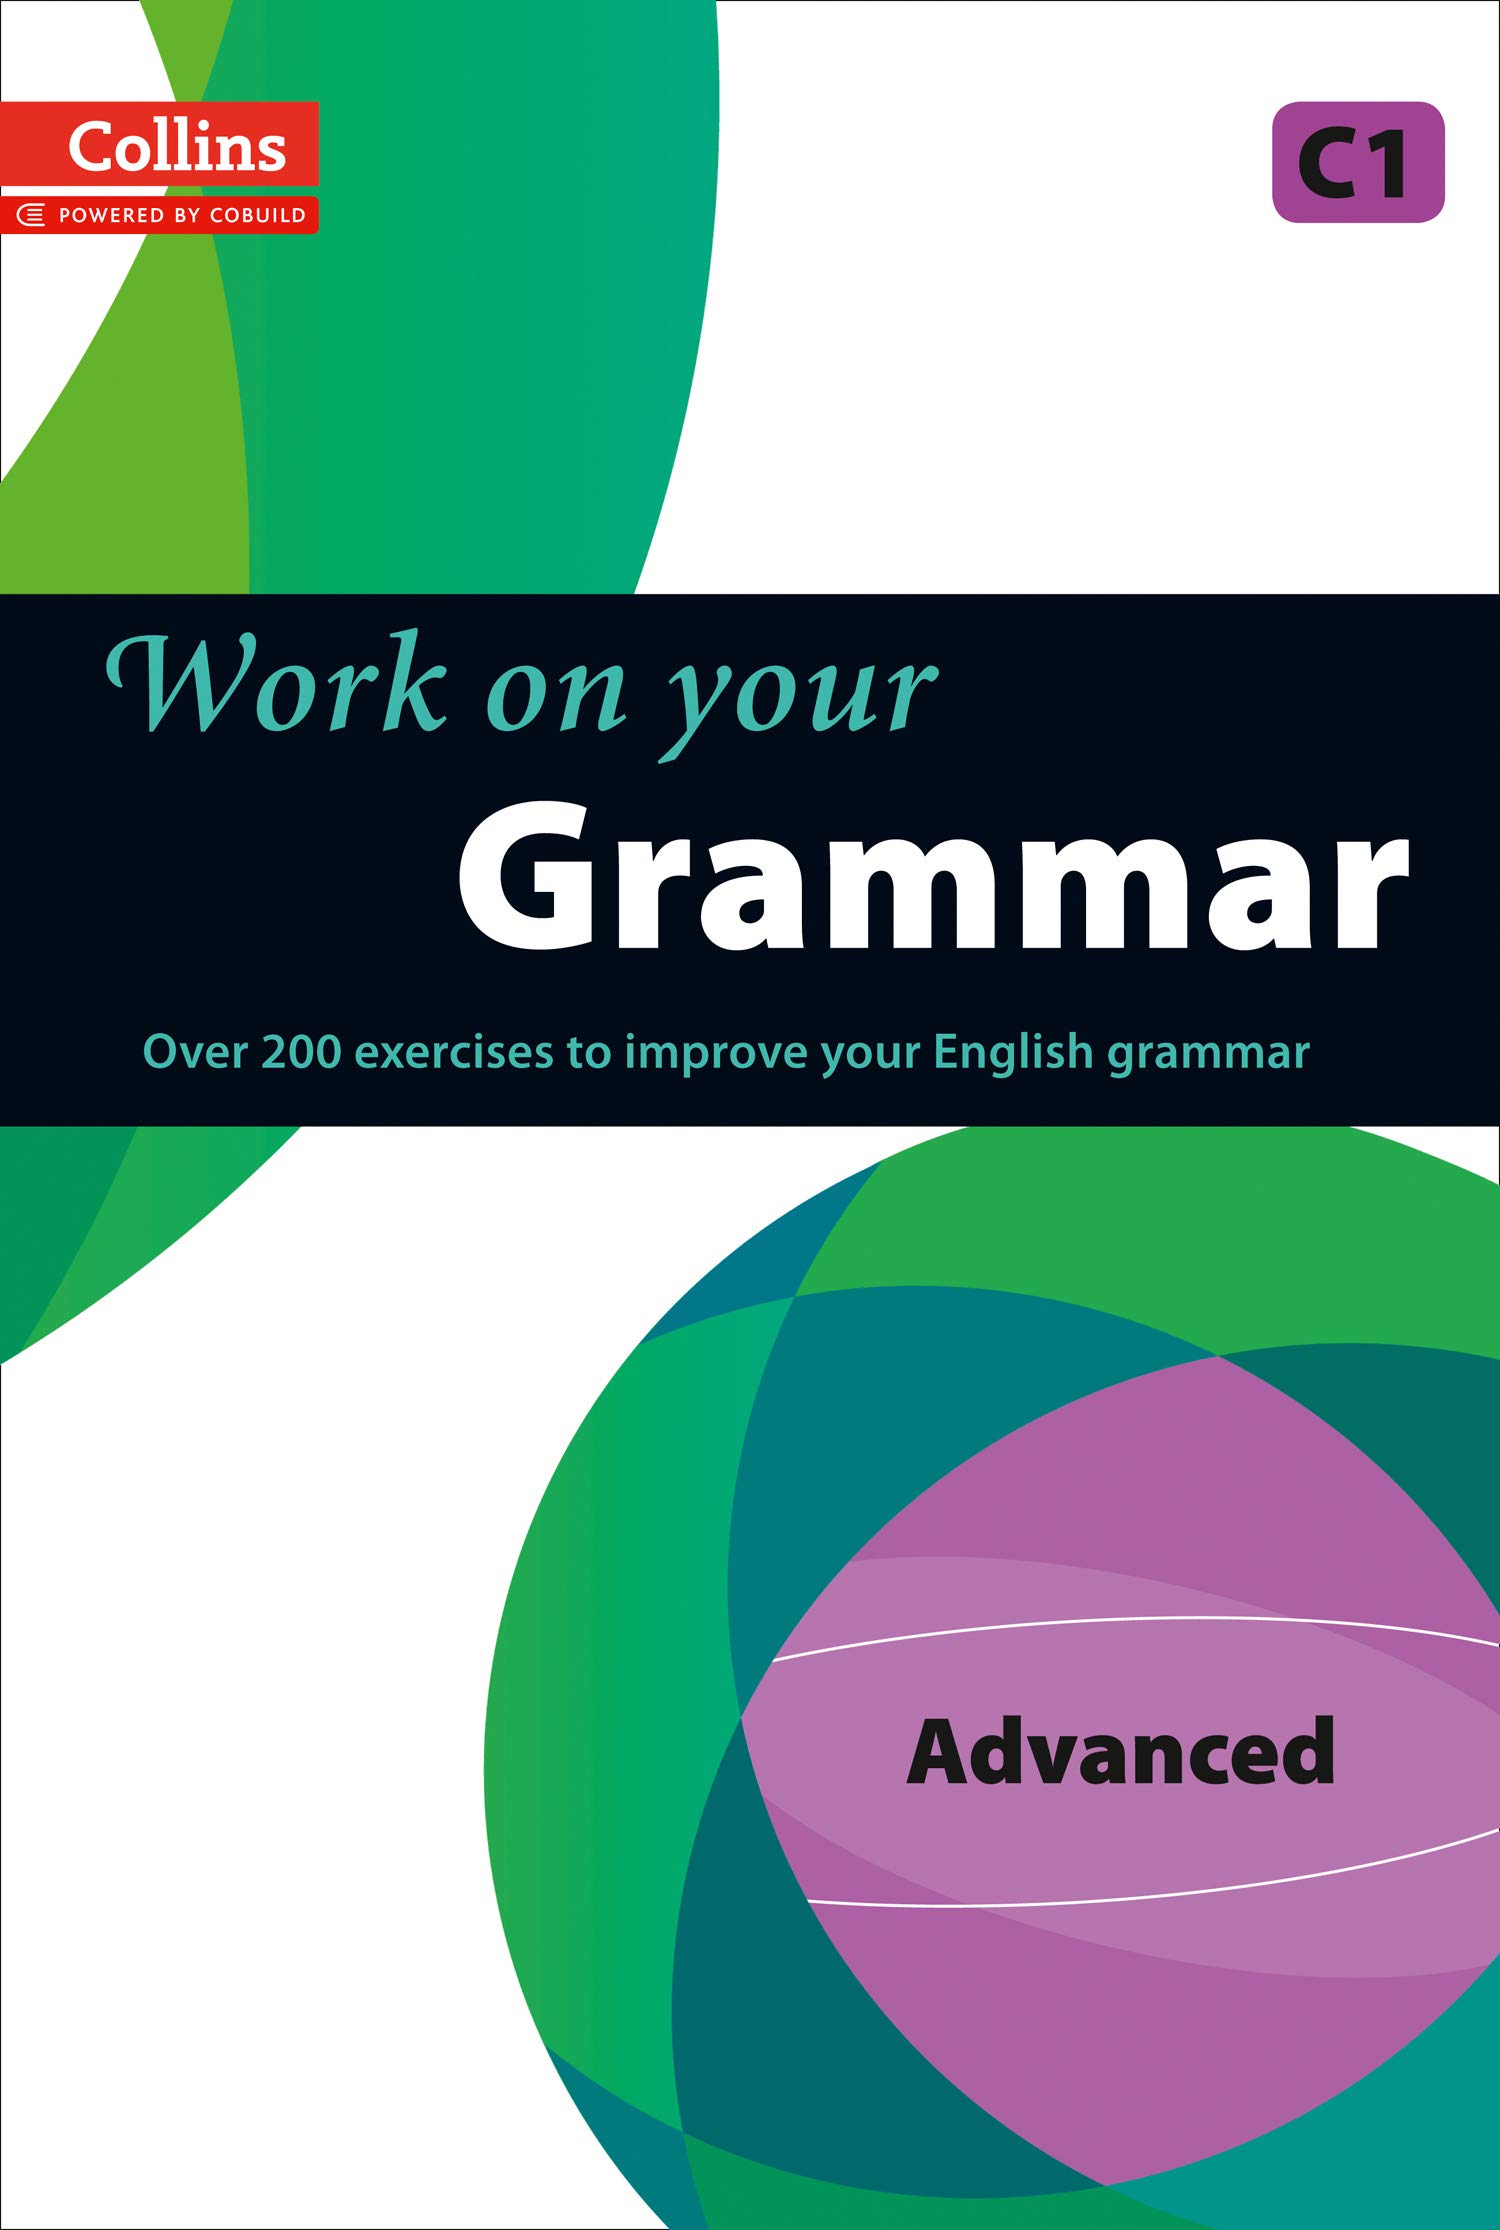 Collins - Work on Your Grammar: Advanced